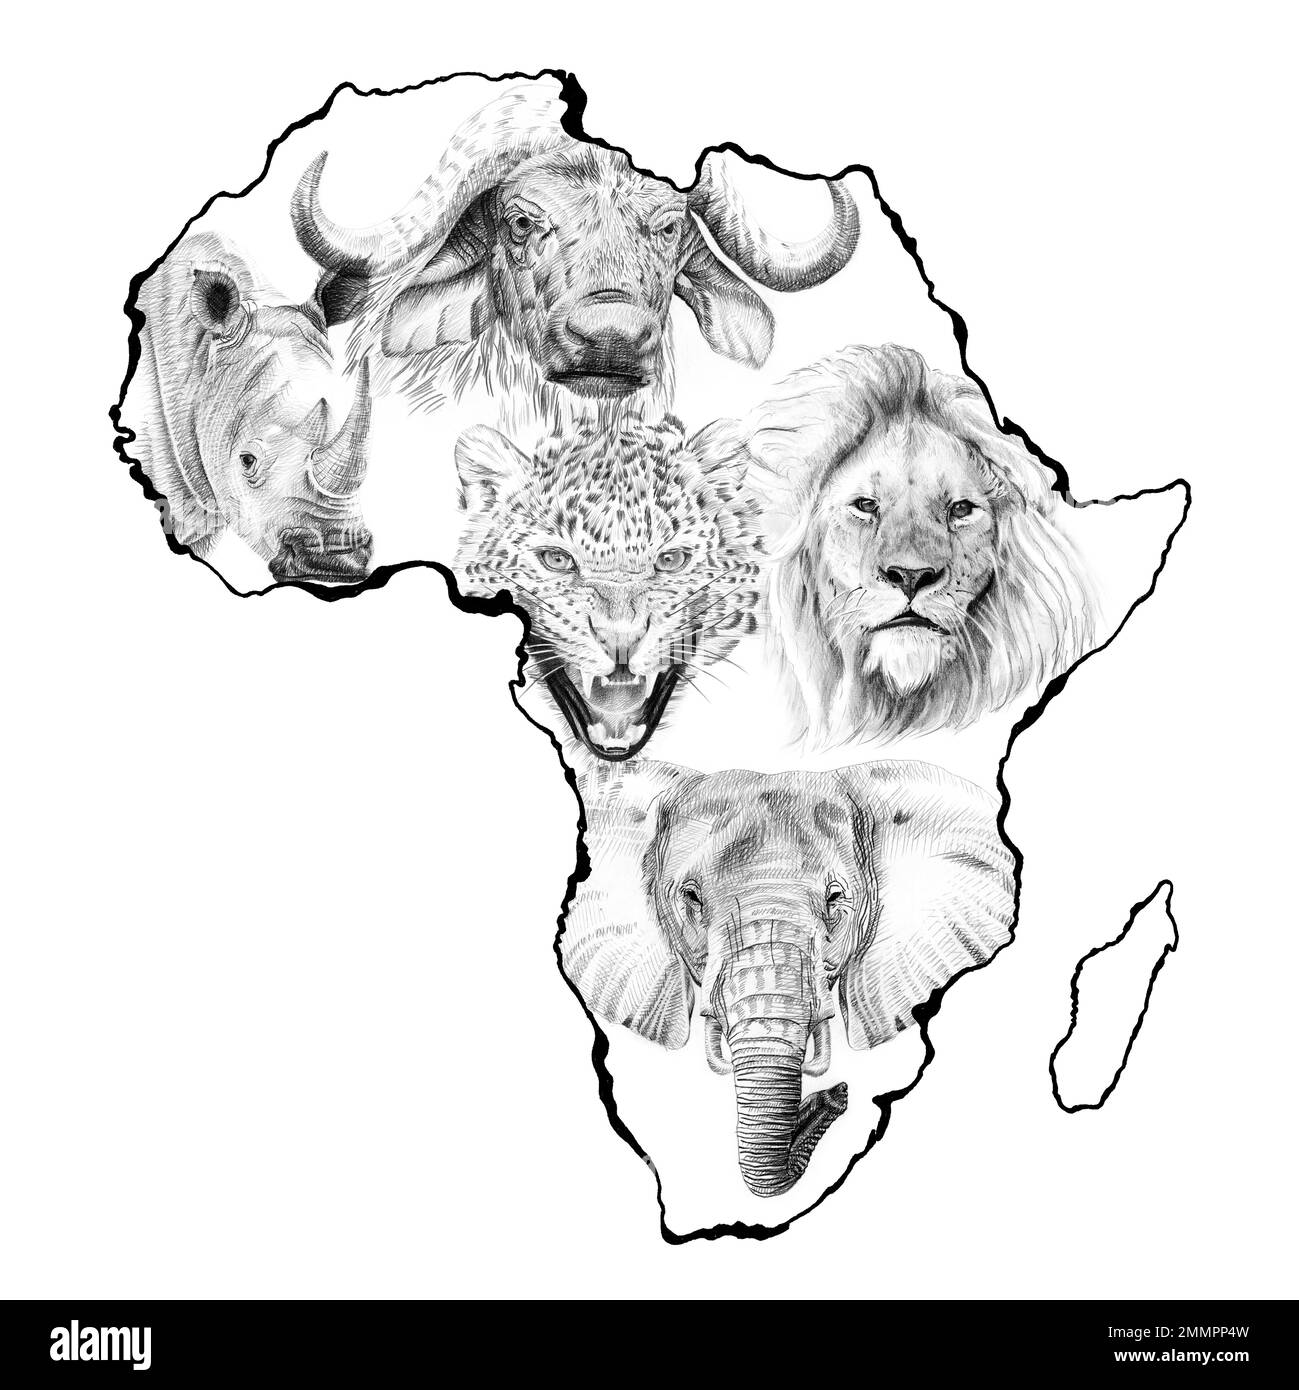 Grande animale africano cinque. Illustrazione disegnata a mano nel continente. Raccolta di illustrazioni disegnate a mano (originali, nessuna traccia) Foto Stock